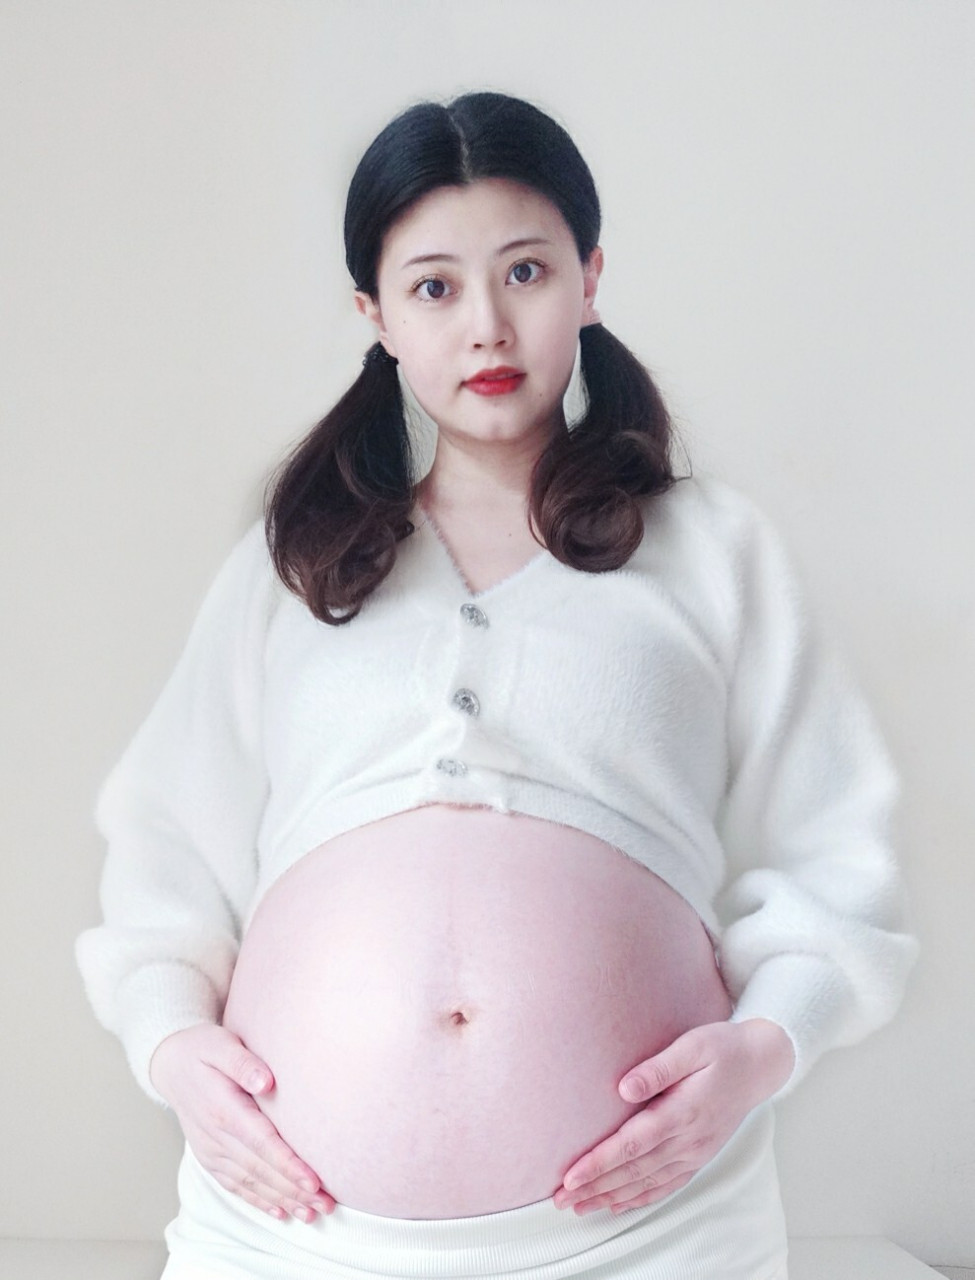 孕晚期,这肚子为啥又大又圆,又白又光滑~ 我孕36周啦,还有刚好一个月